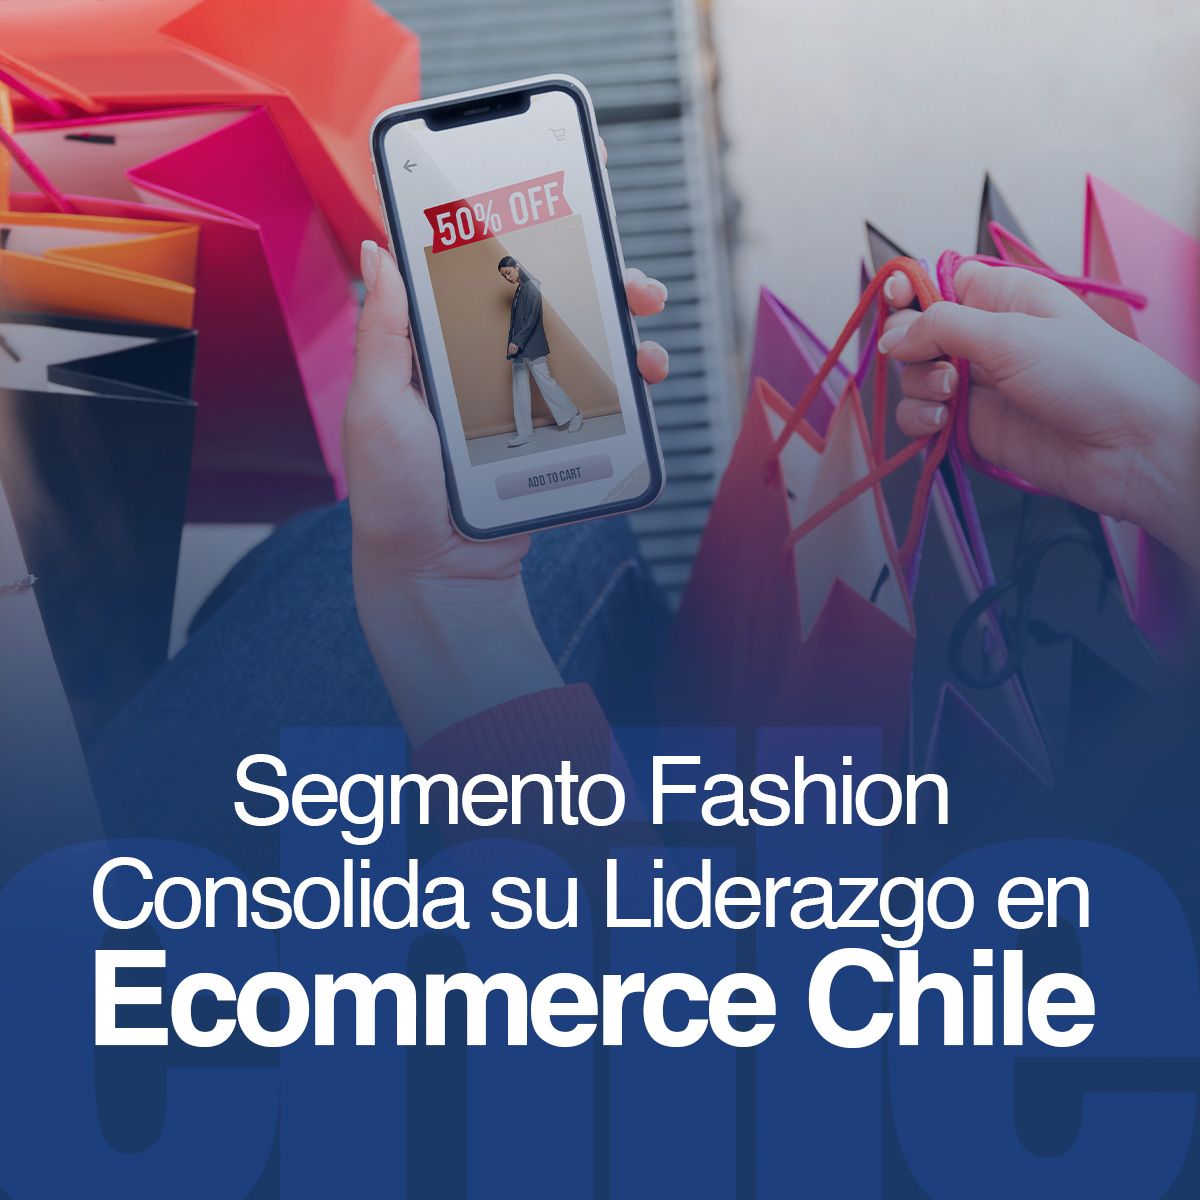 Segmento Fashion Consolida su Liderazgo en Ecommerce Chile